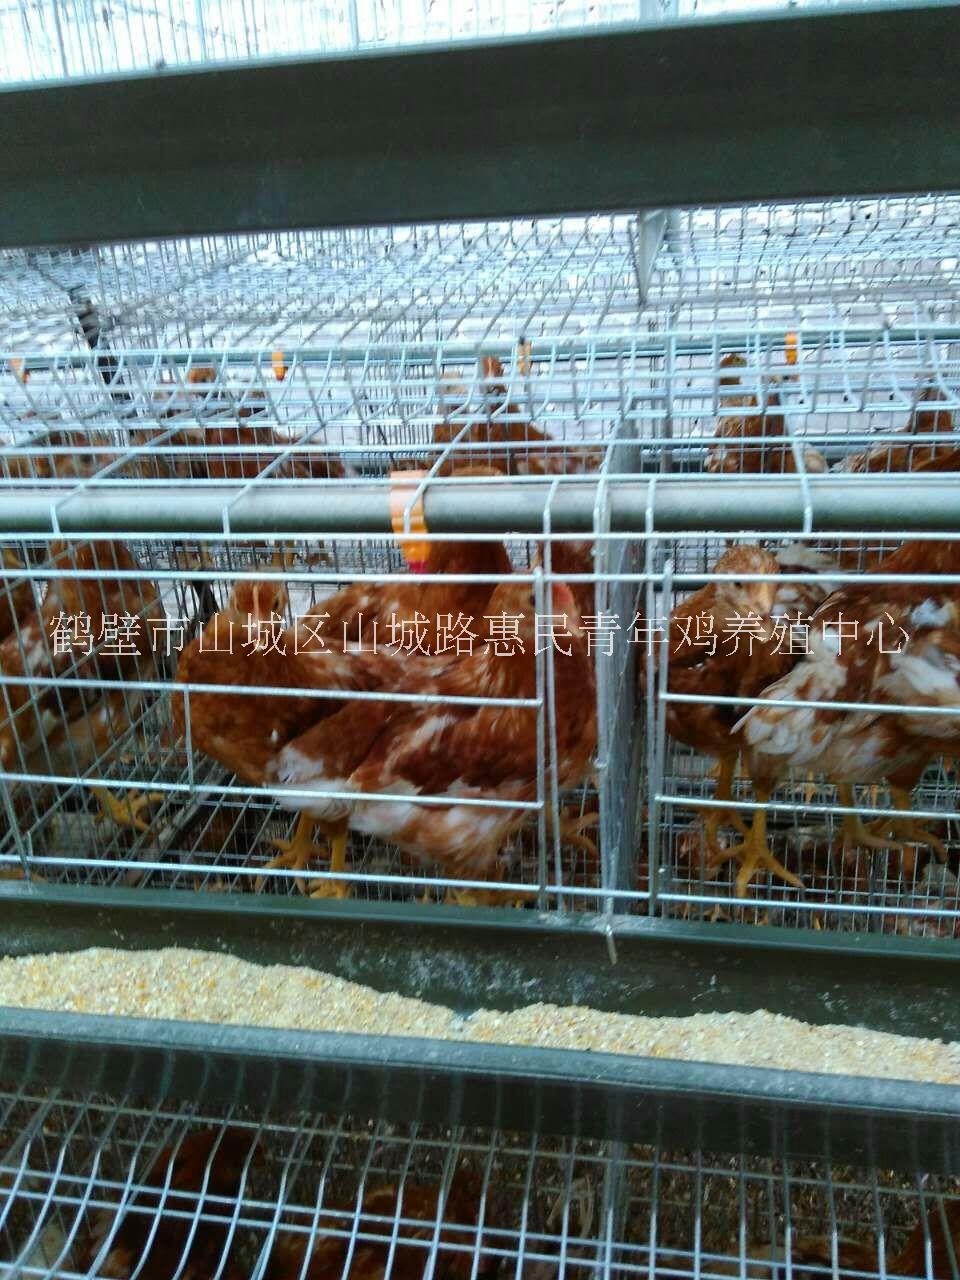 江西蛋鸡育成鸡,蛋鸡育成鸡养殖技术,海兰褐蛋鸡育成鸡管理方法